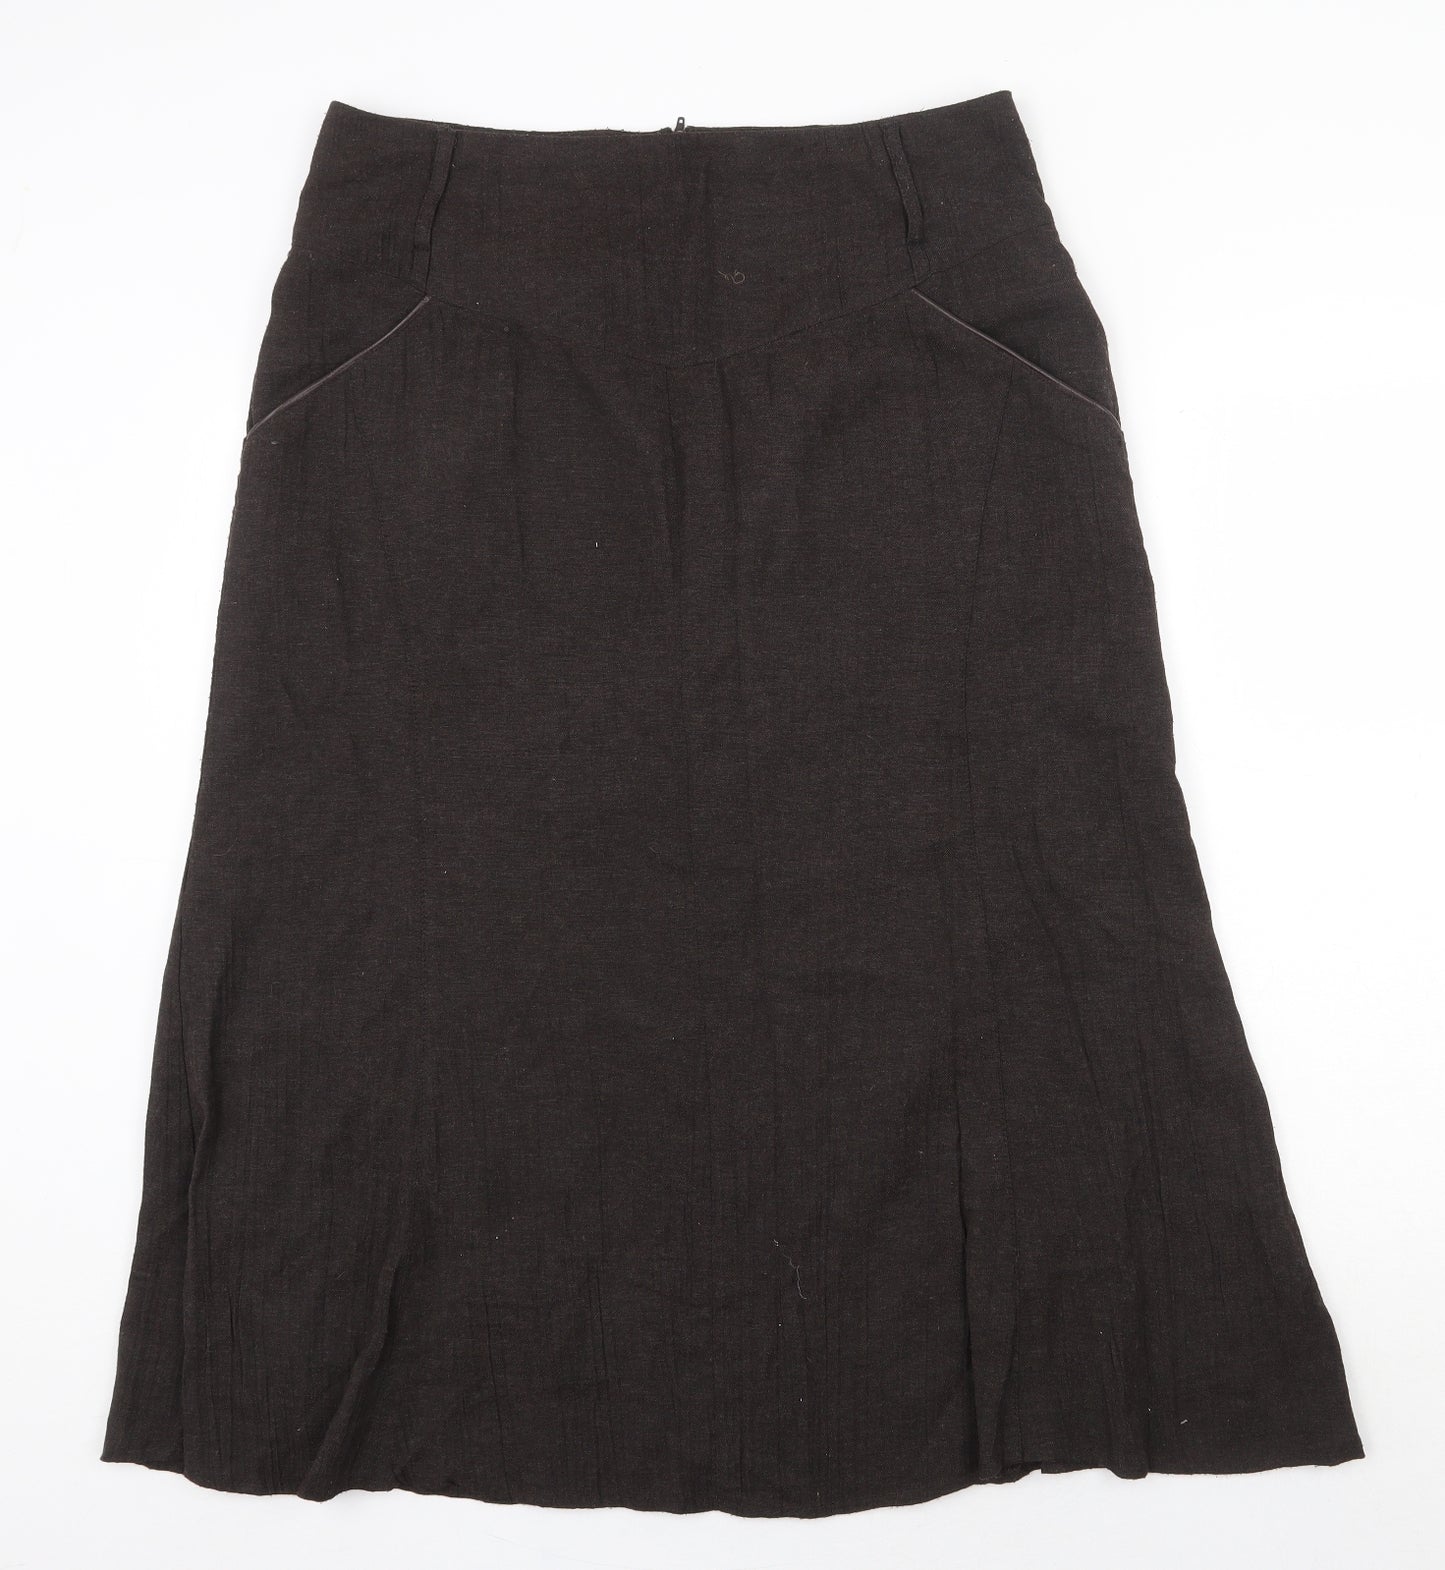 Steilmann Womens Brown Viscose Flare Skirt Size 16 Zip